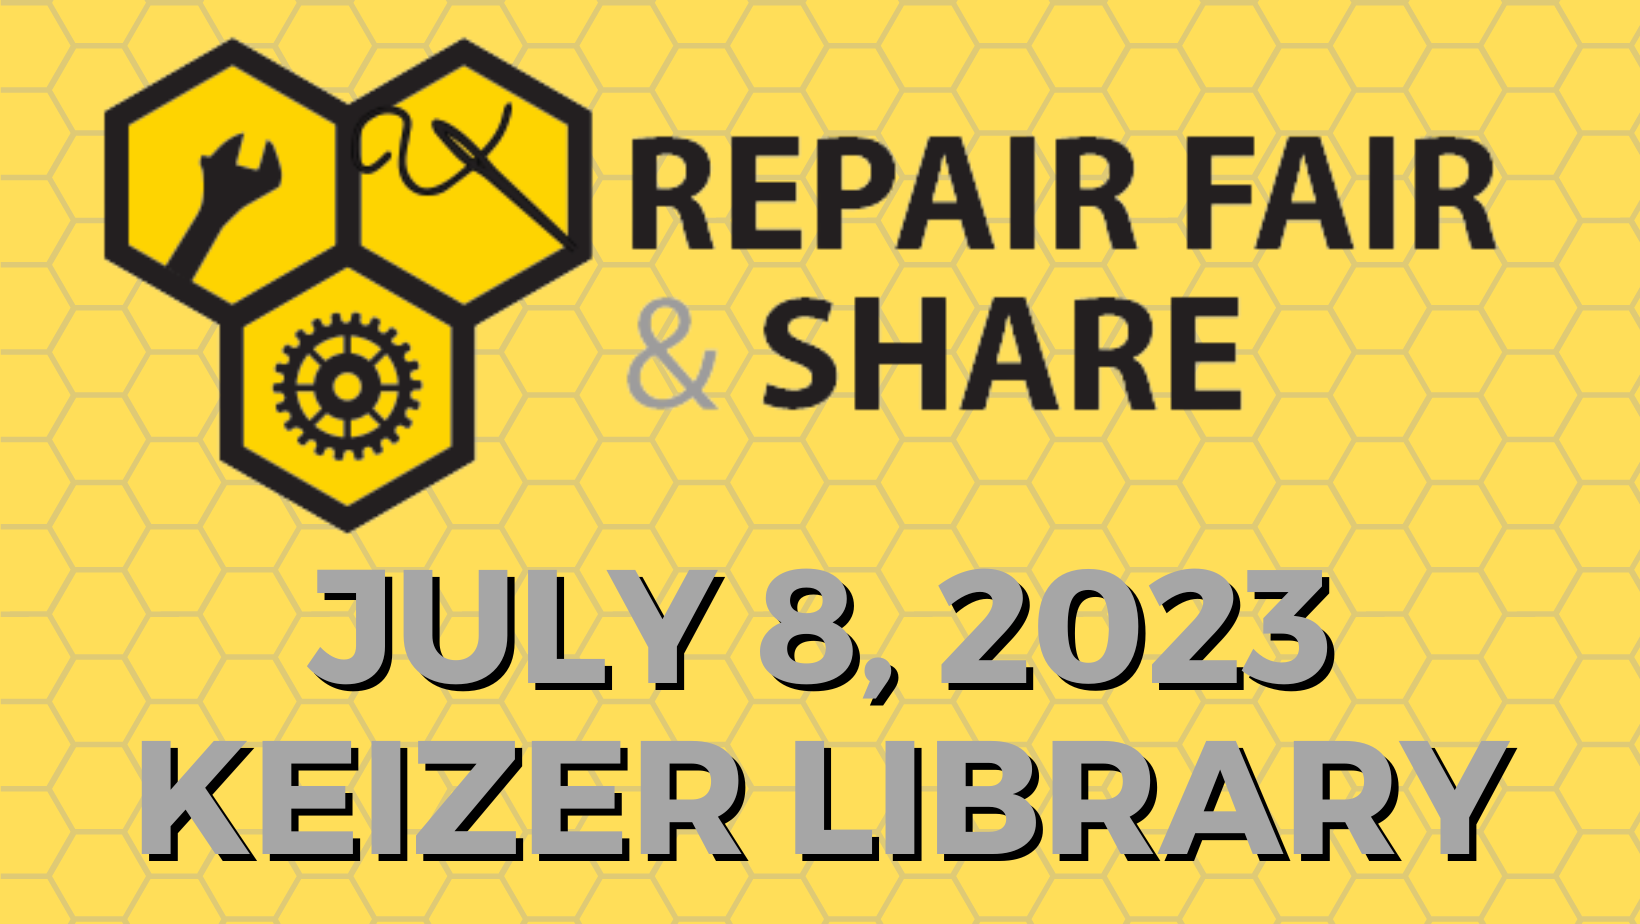 Keizer Library Repair Fair.png